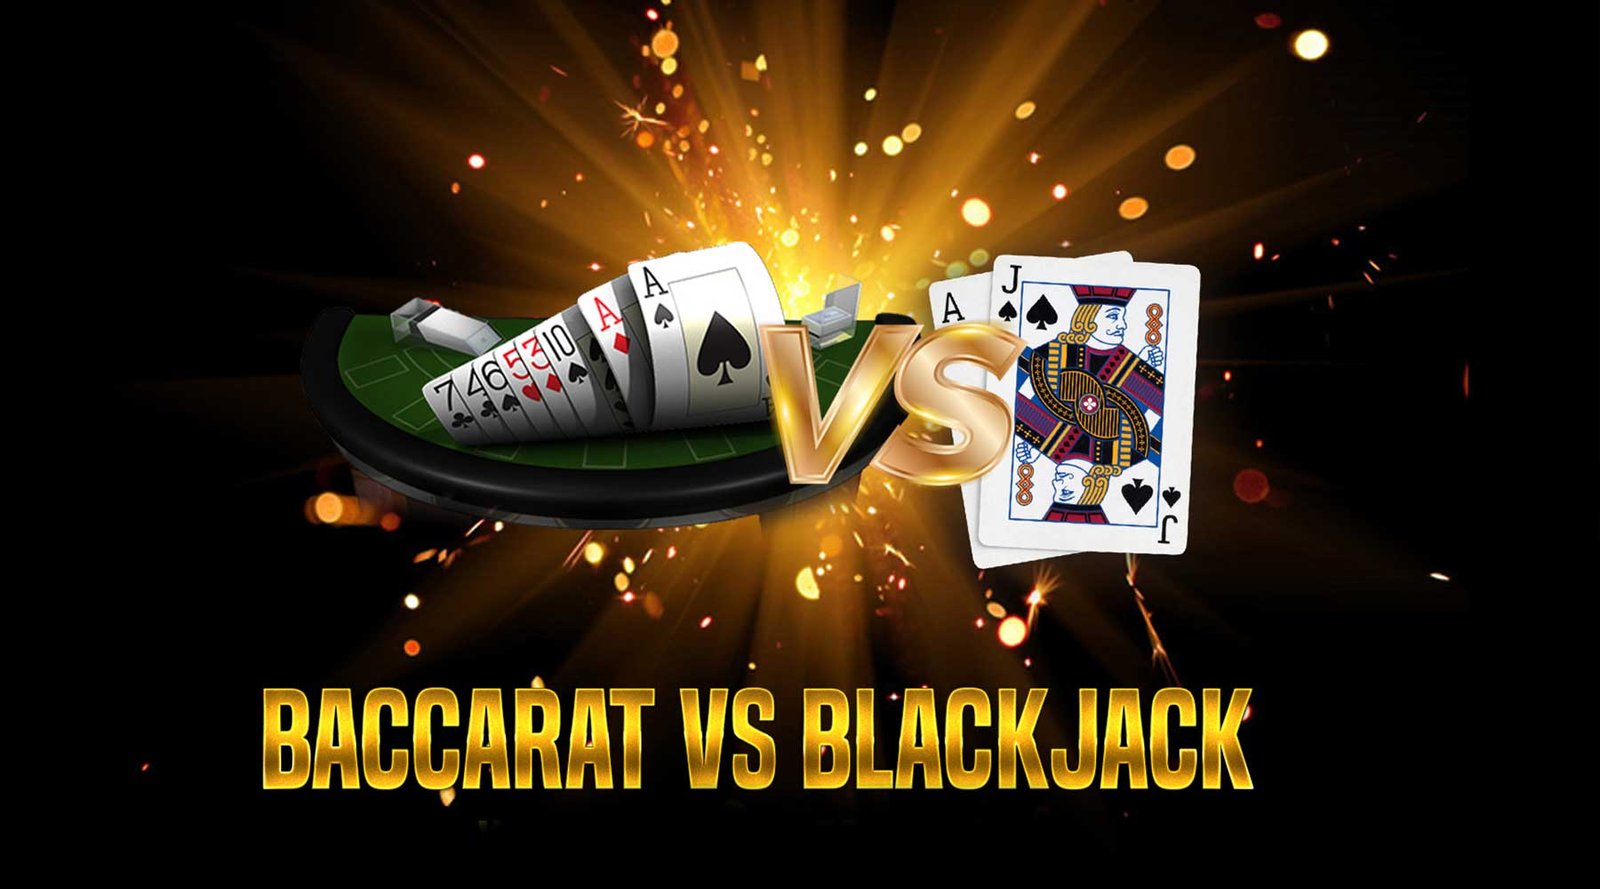 Baccarat Vs. Blackjack Odds